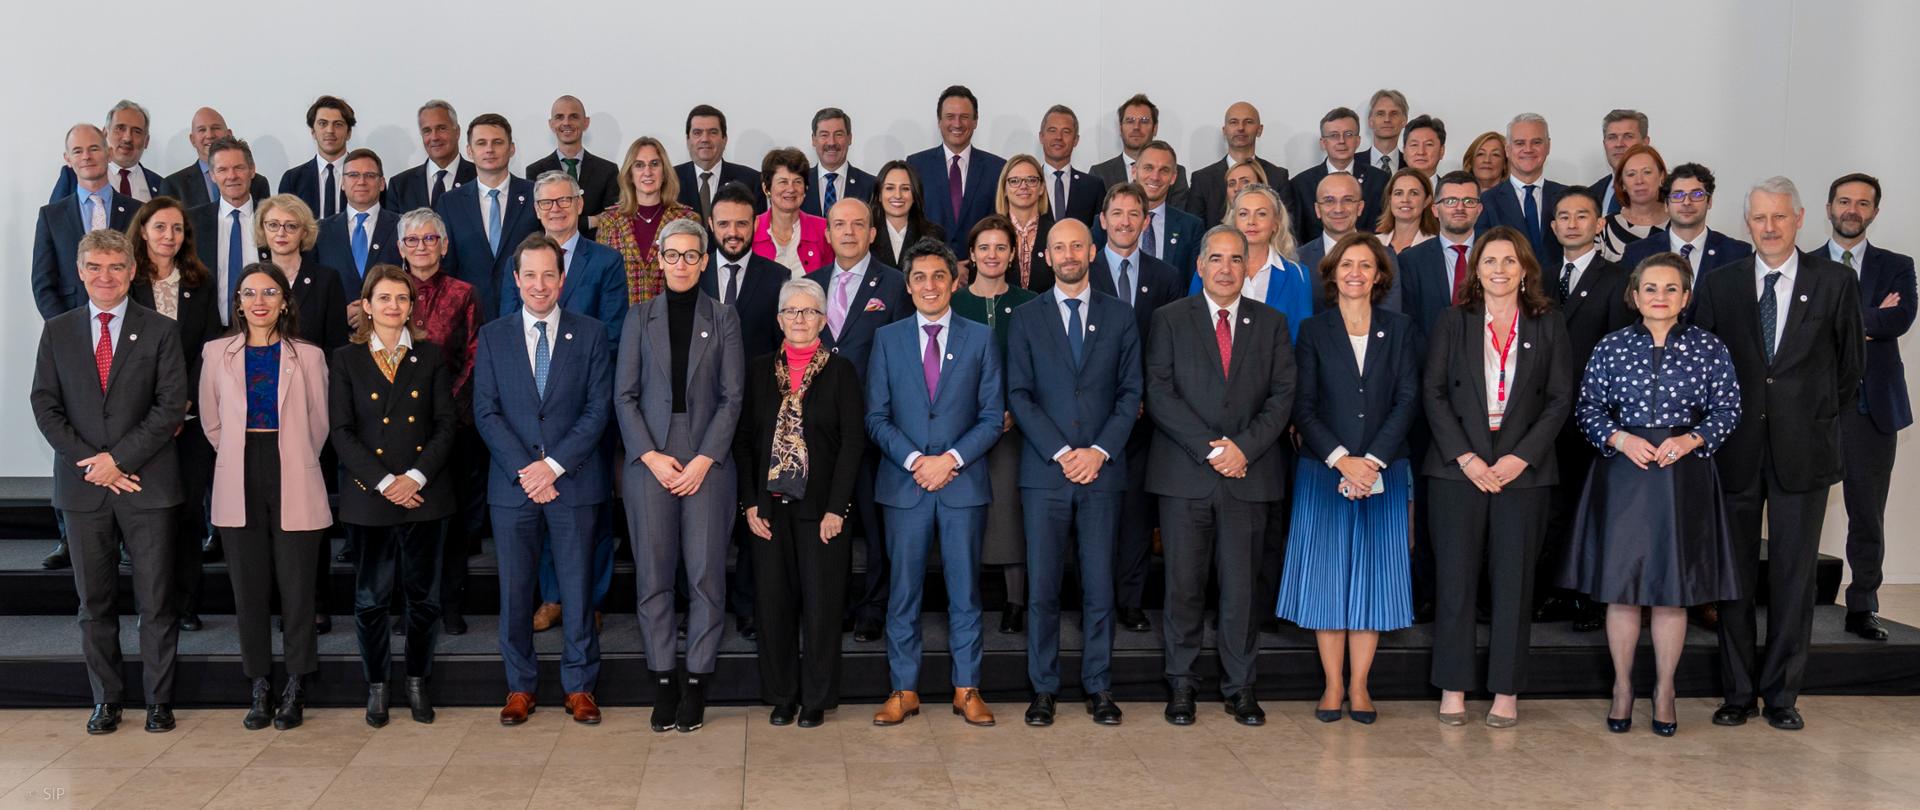 Uczestnicy sesji ministerialnej Komitetu Zarządzania Publicznego OECD, Luksemburg, 18 listopada 2022 r. - zdjęcie grupowe